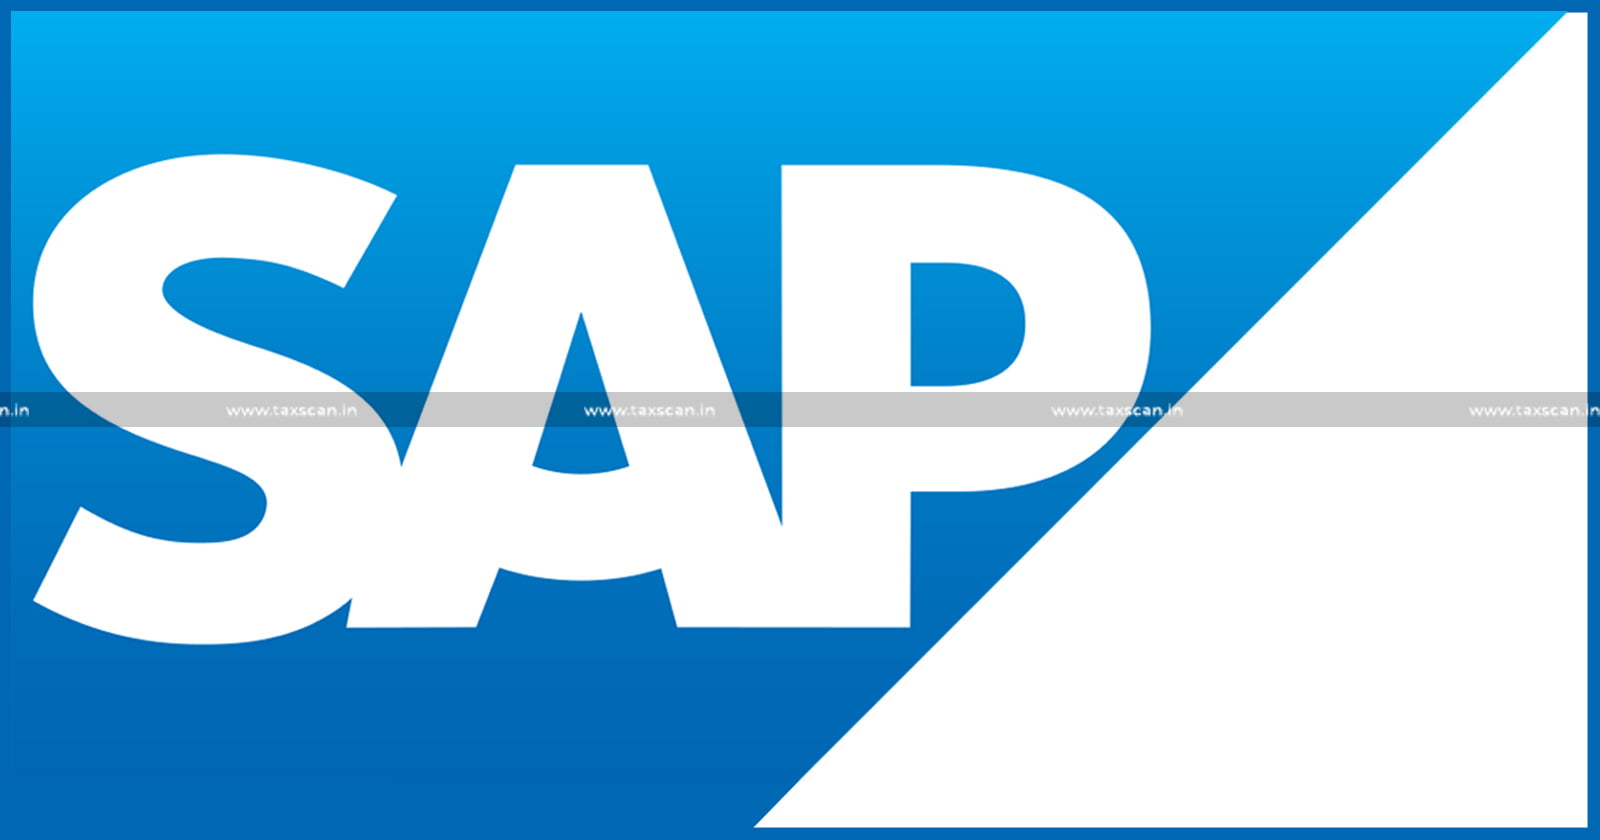 SAP - CA, CMA Vacancy in SAP - Vacancy - CA - CMA - jobscan - taxscan